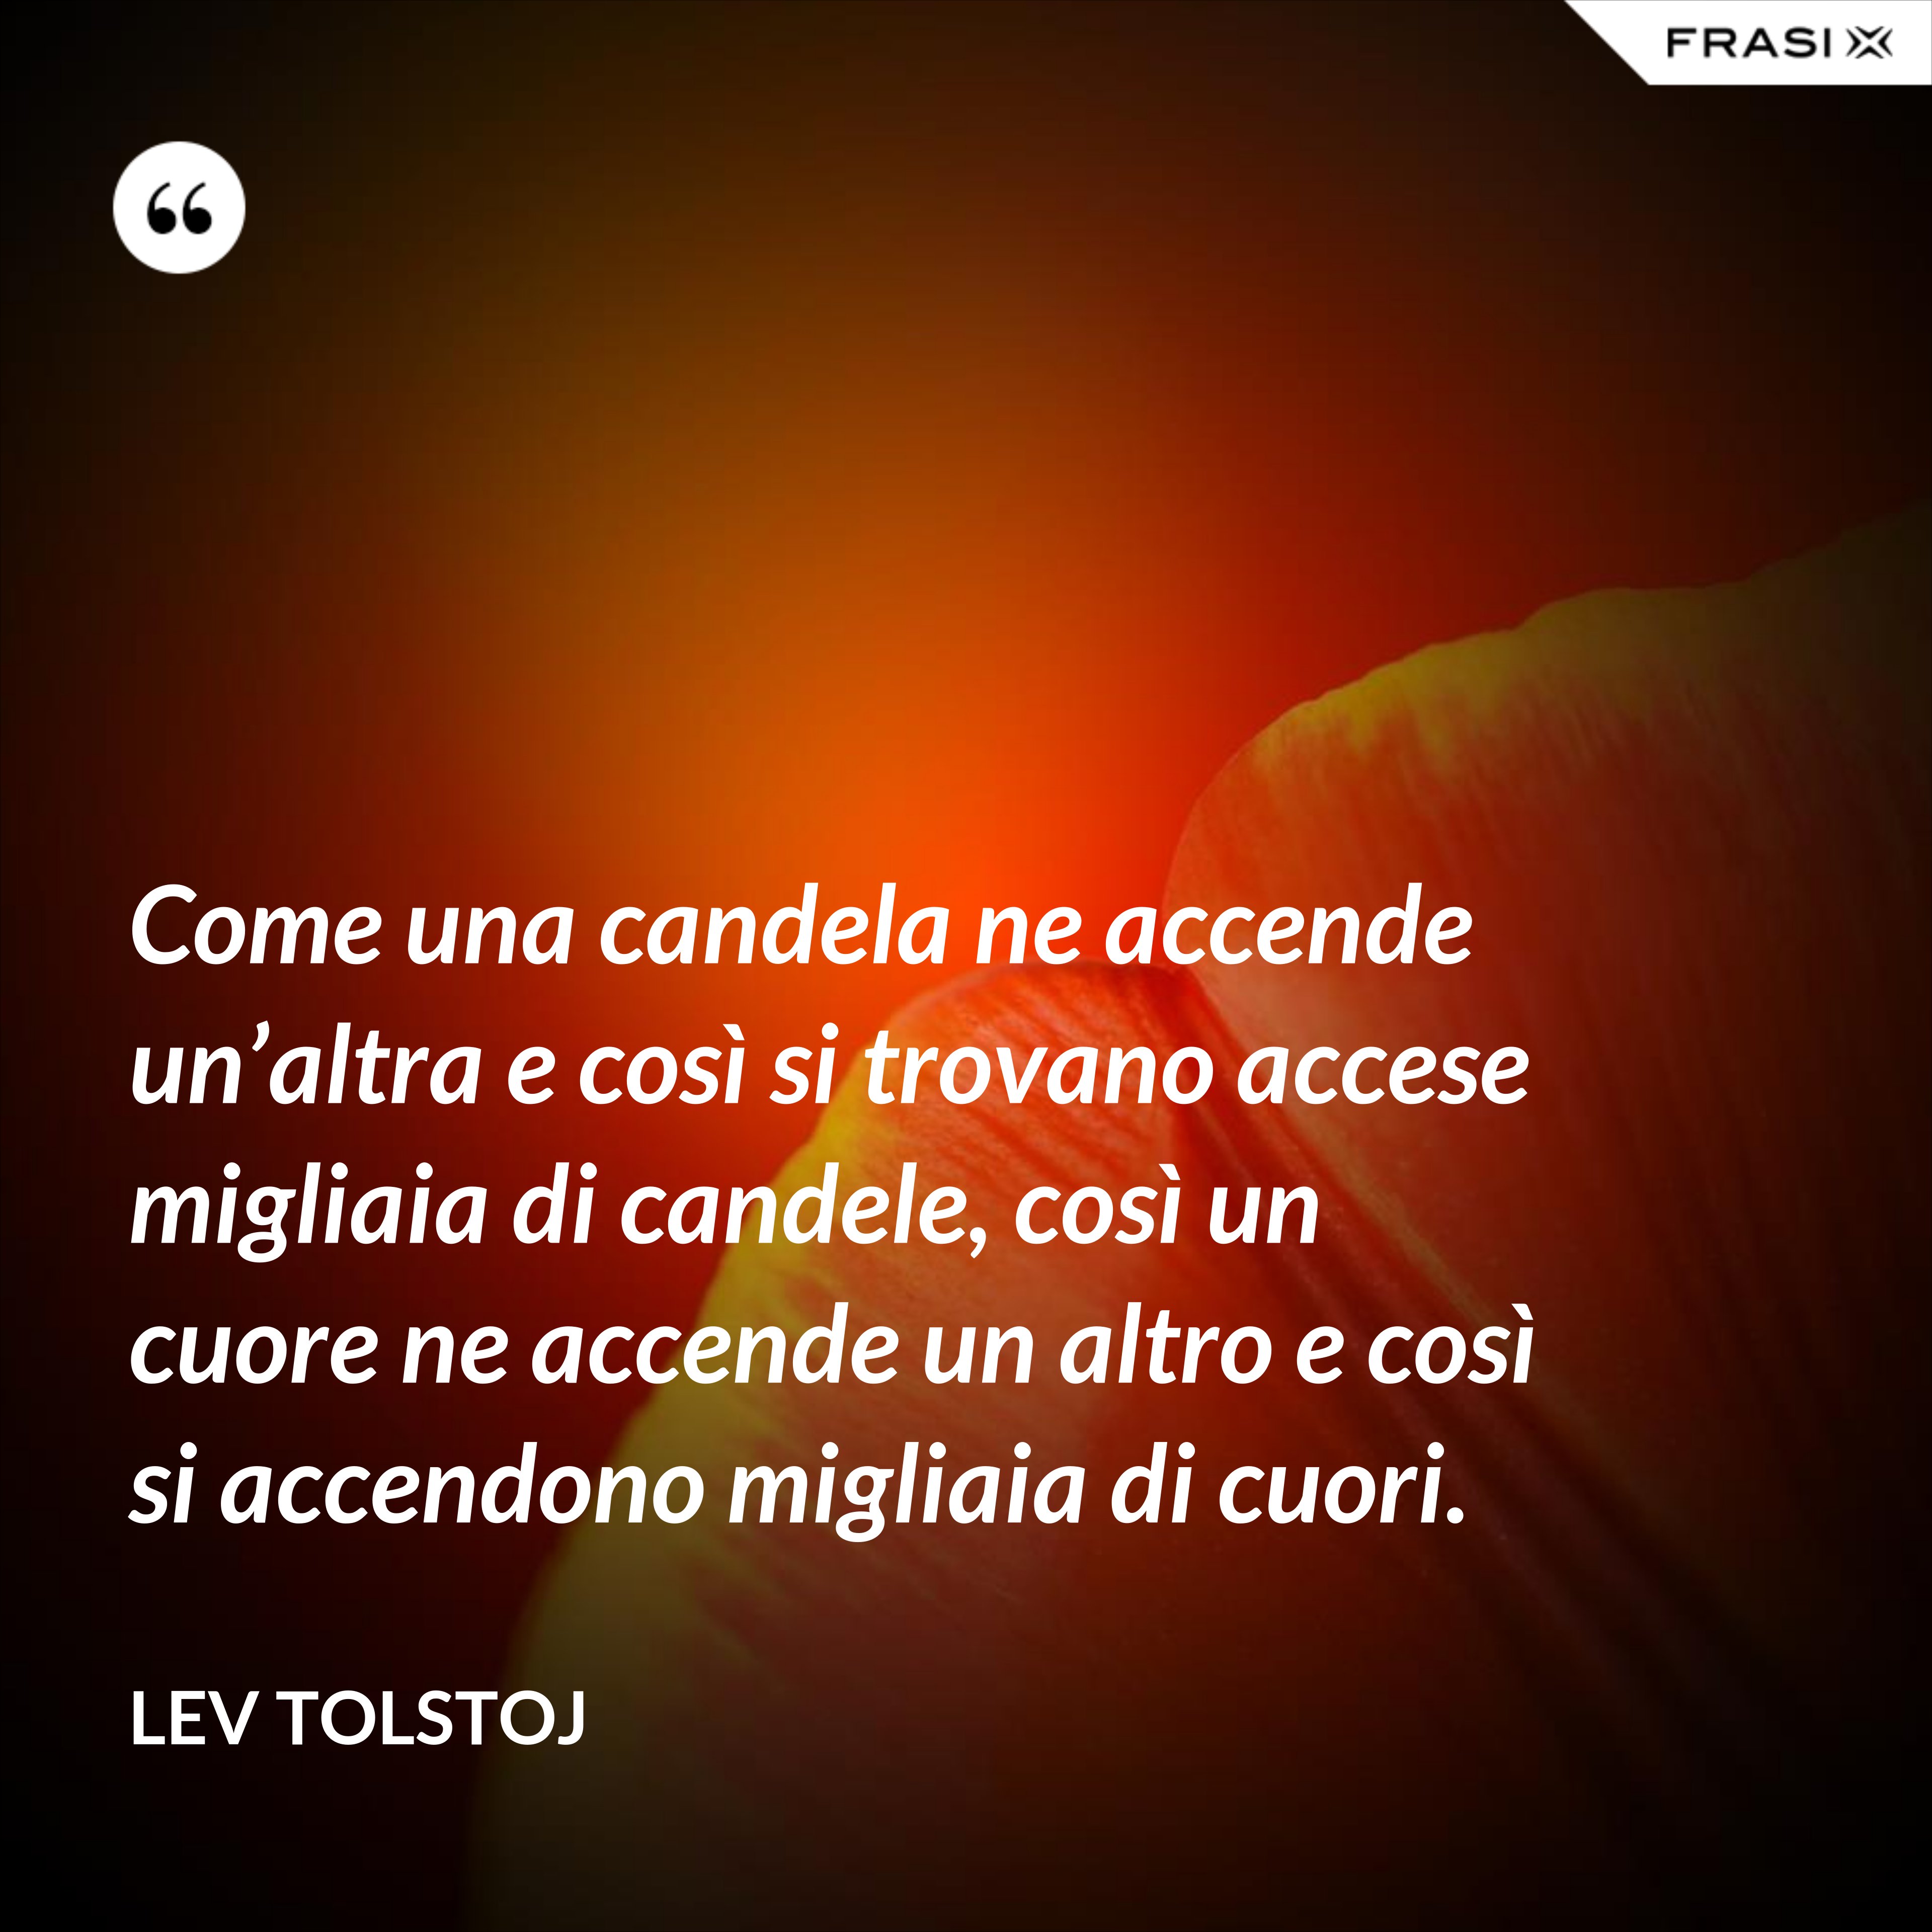 Come una candela ne accende un’altra e così si trovano accese migliaia di candele, così un cuore ne accende un altro e così si accendono migliaia di cuori. - Lev Tolstoj